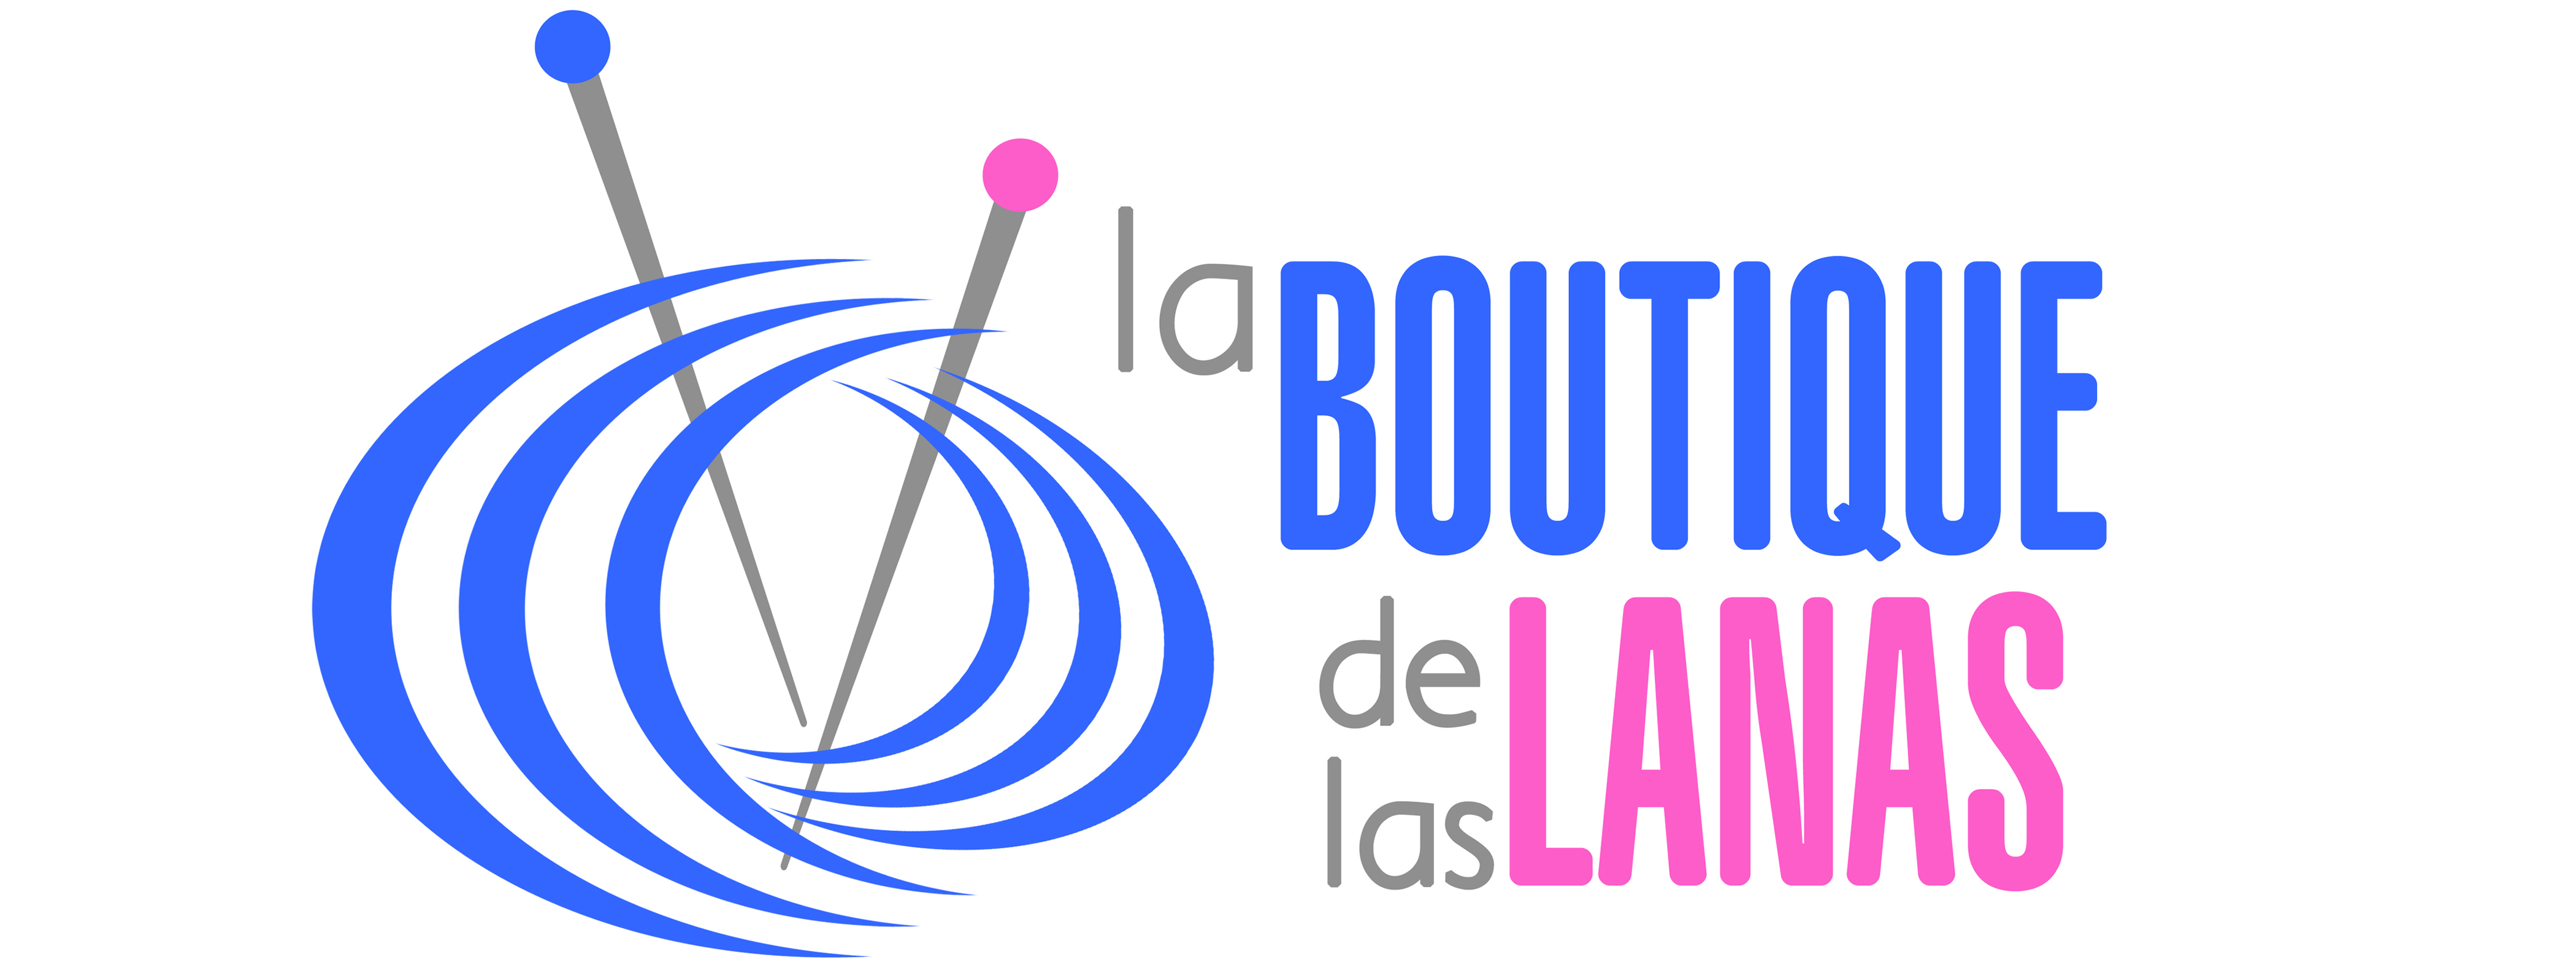 la-boutique-de-las-lanas-logo-1448955596